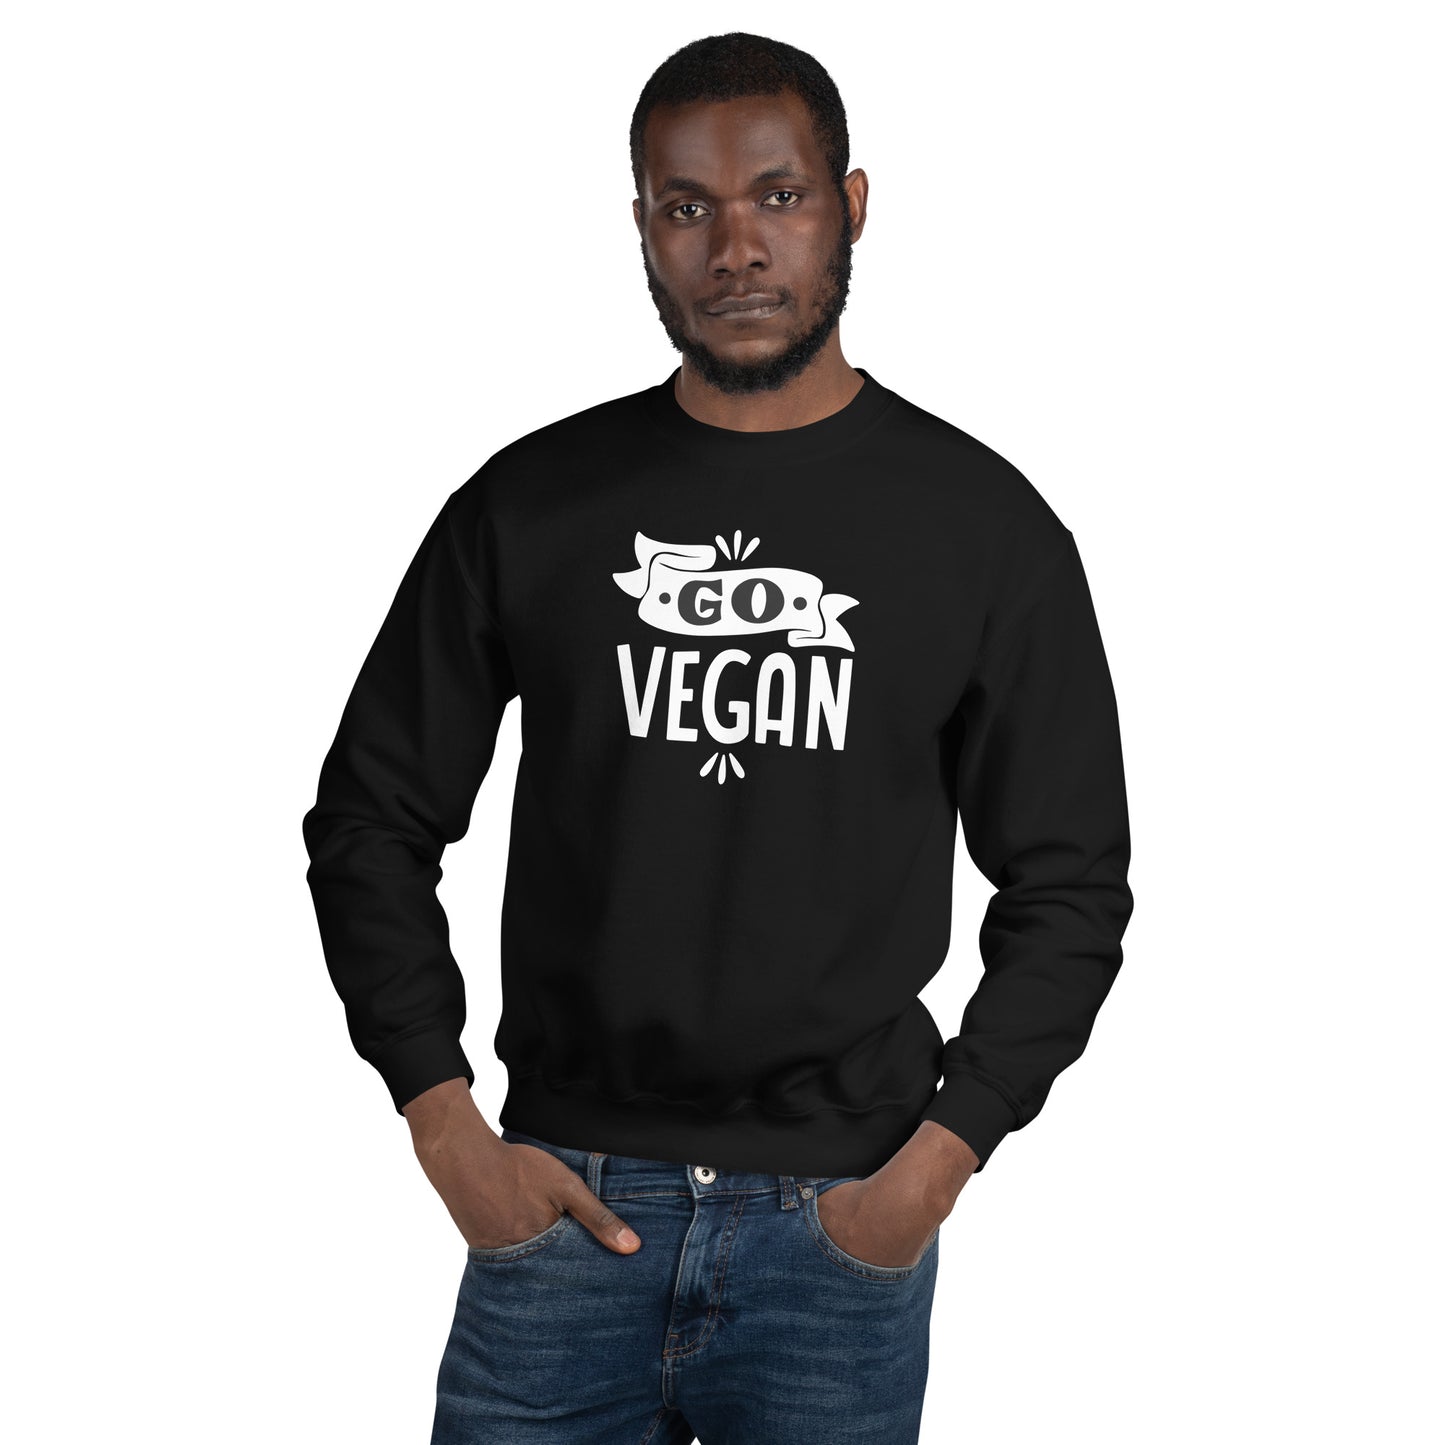 Go Vegan - Sweatshirt